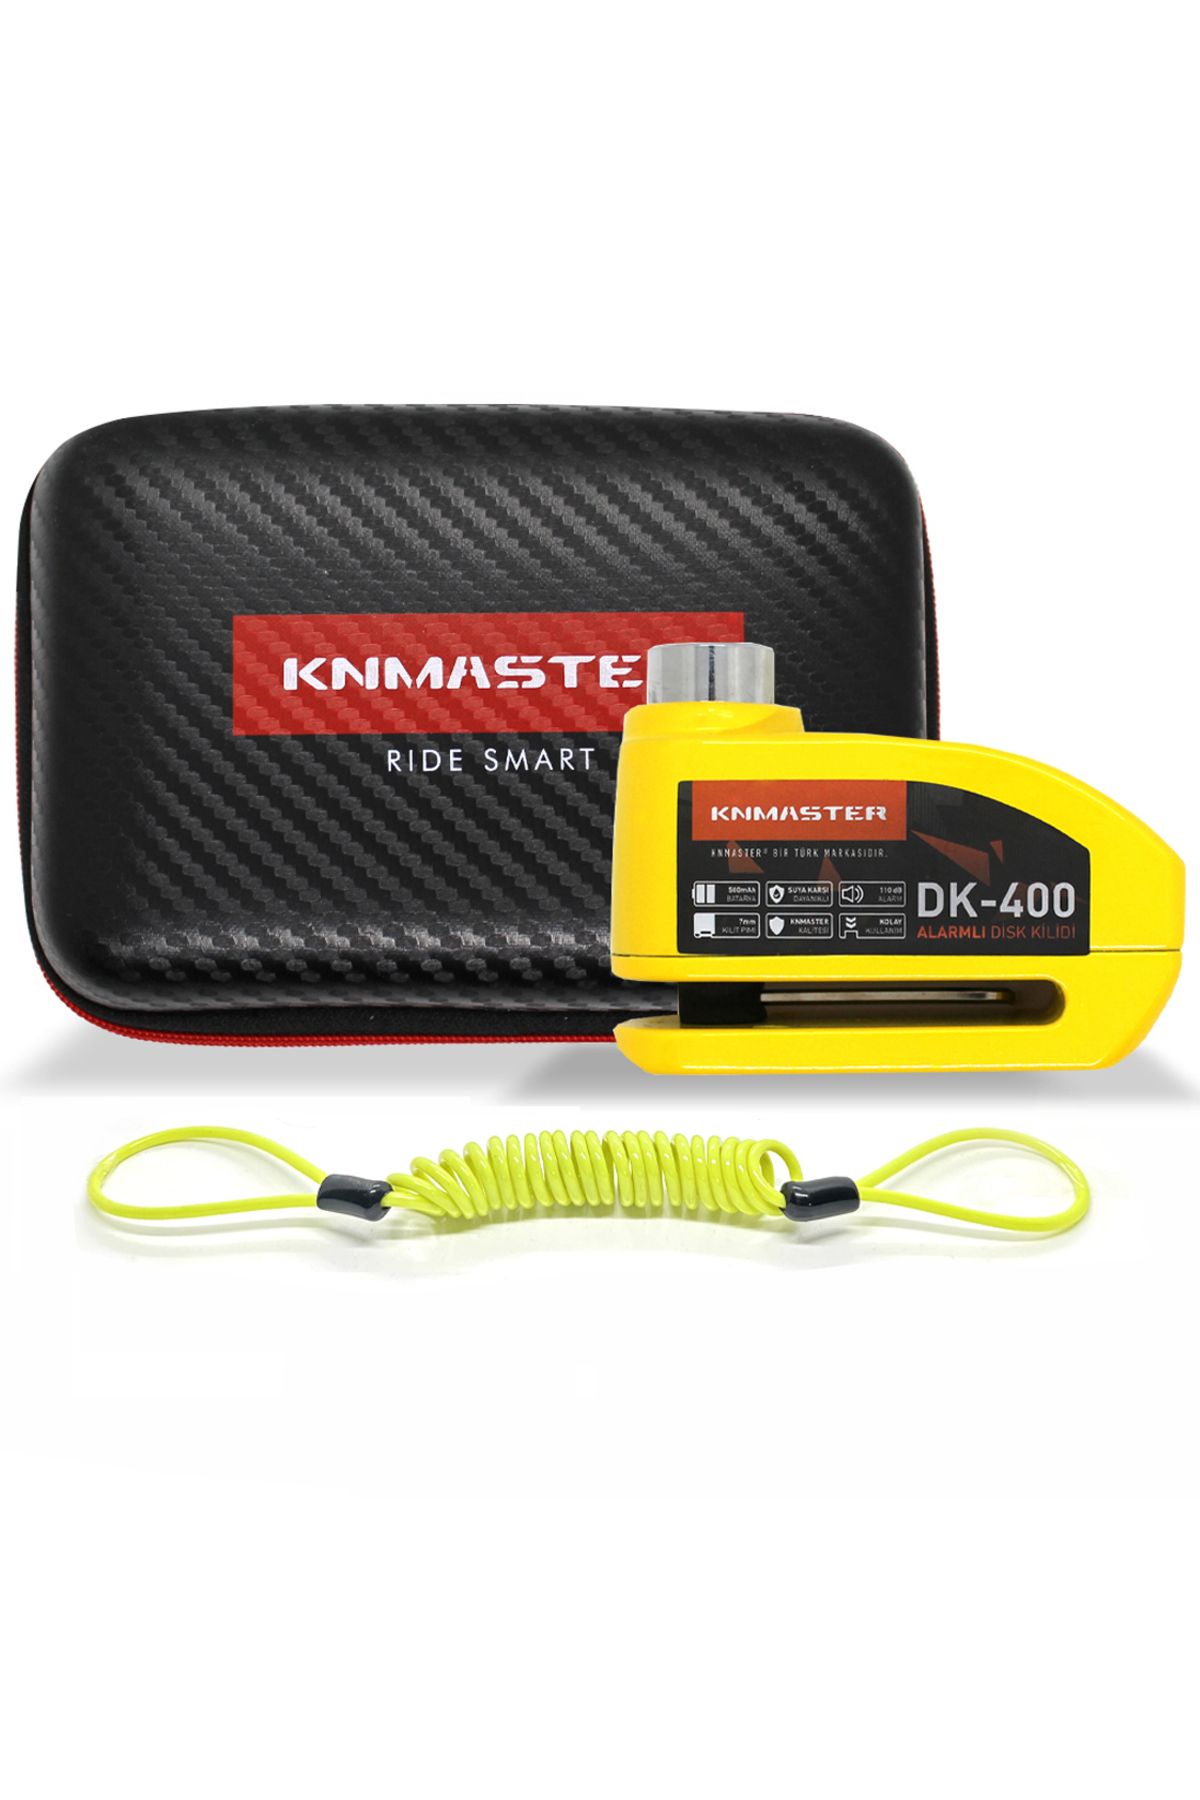 Knmaster Disk Kilidi Dk-400 7mm Alarmlı Hatırlatma Kablosu Ve Çanta Hediyeli ( Sarı )